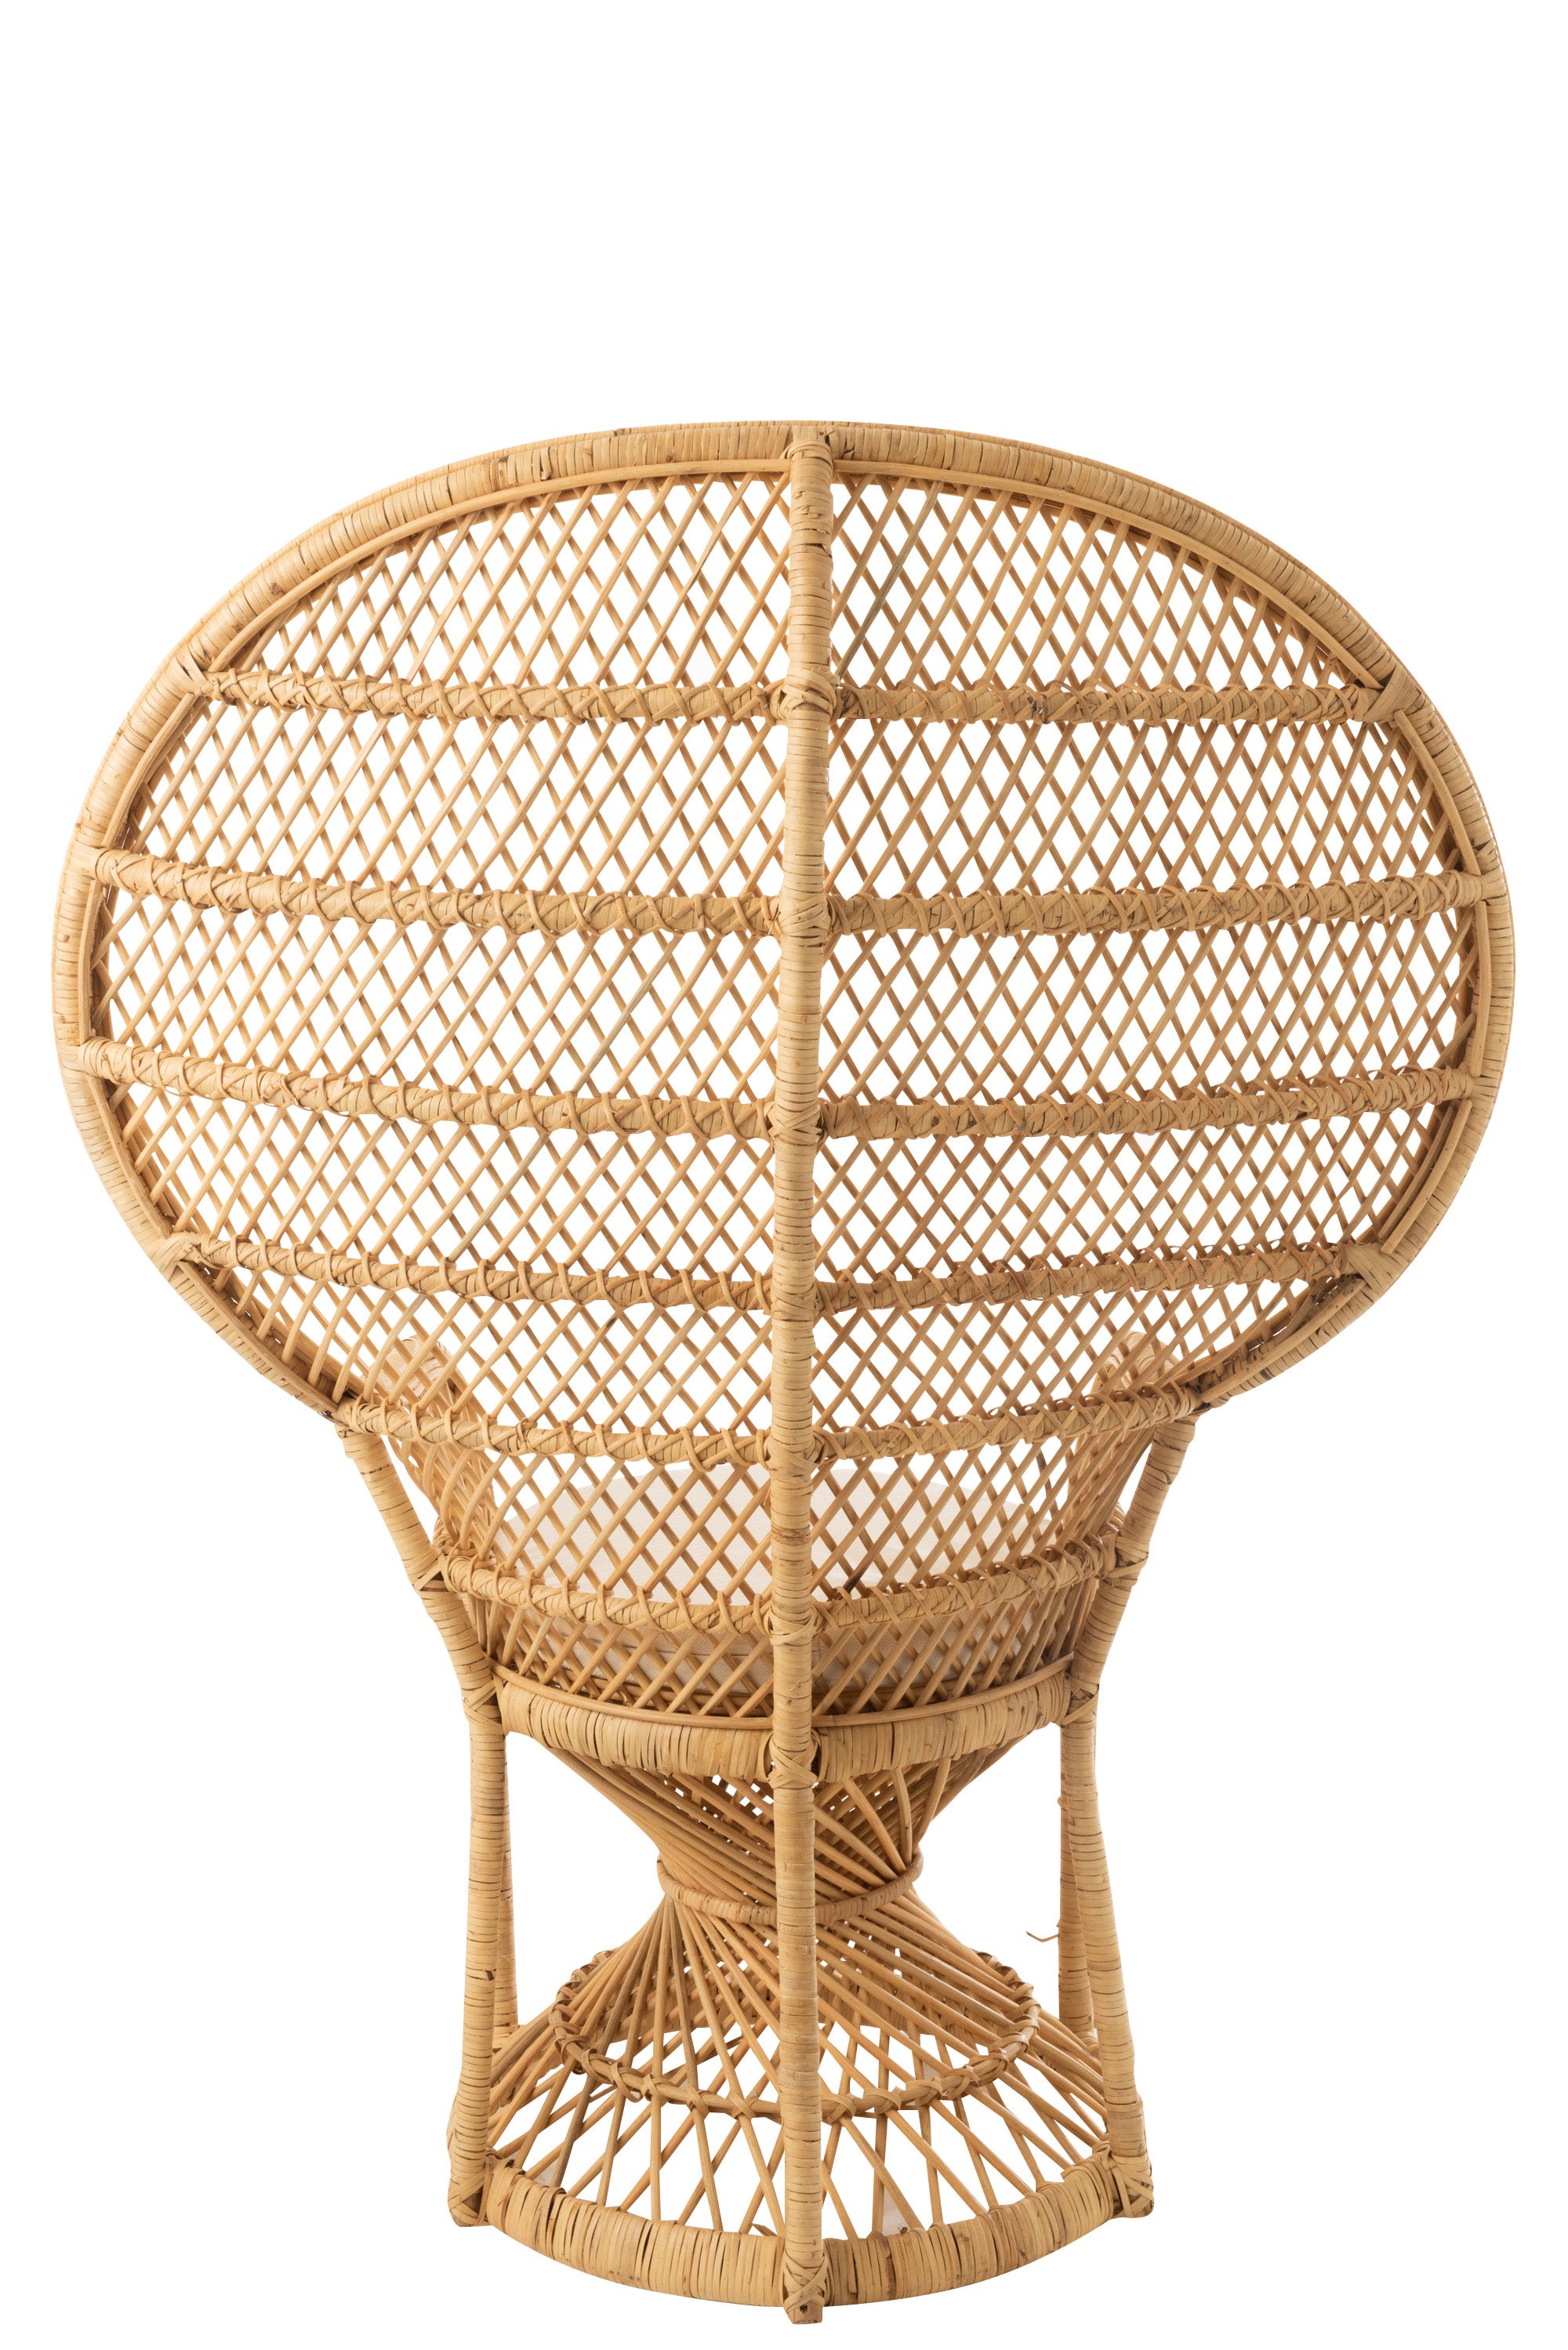 Pfauensessel aus Schilf, Rattan und Bambus, (58,5x101,5 x134cm)